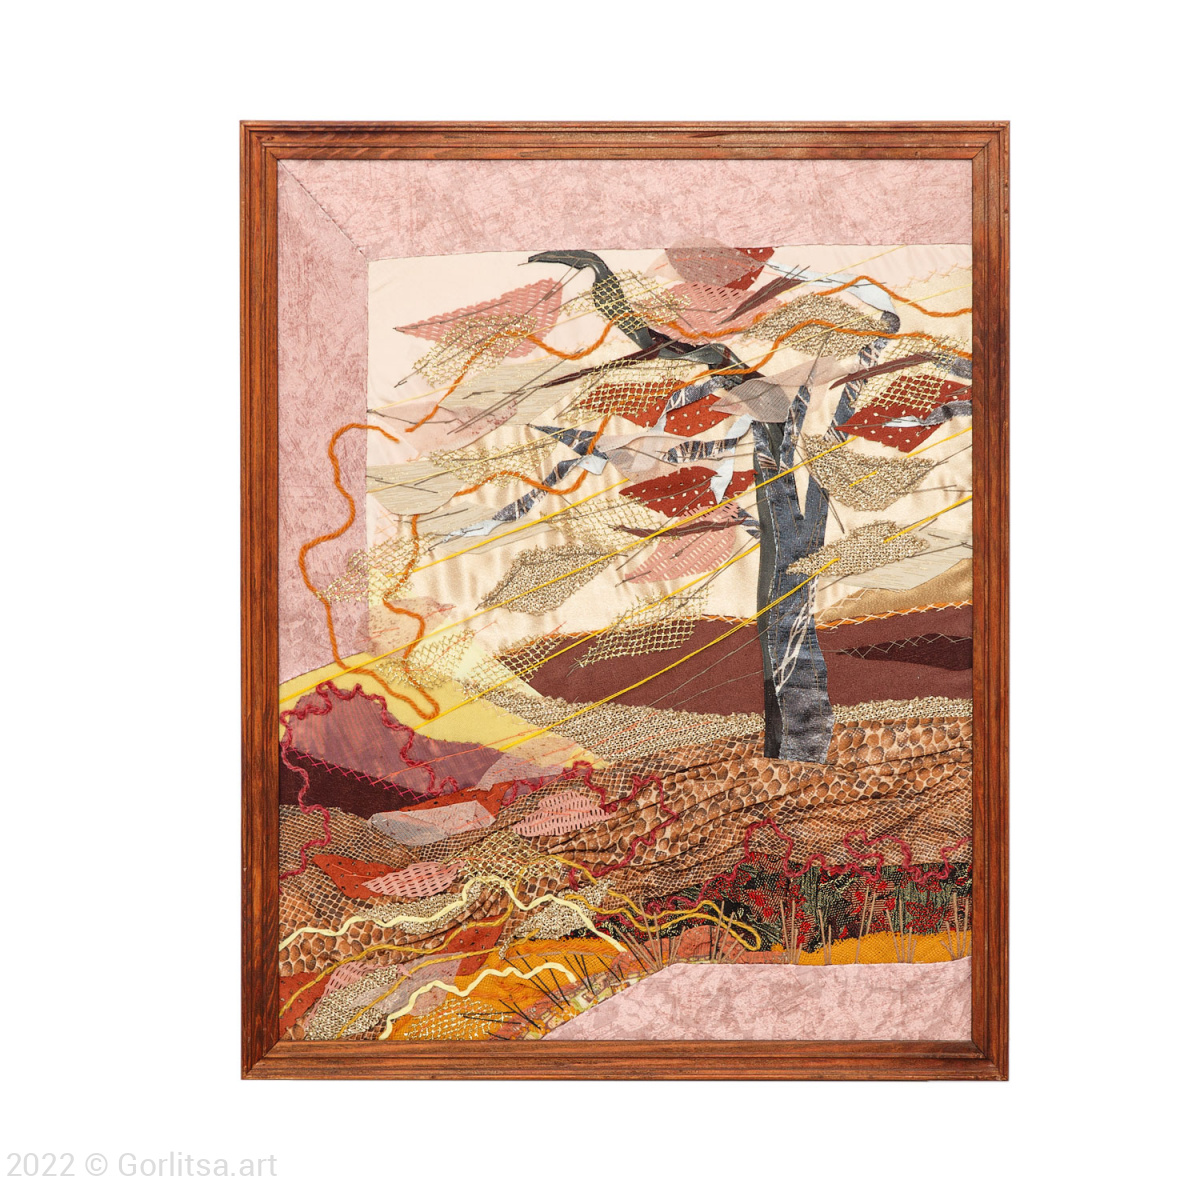 Панно диптих «Листопад» в технике арт-квилт, ручная работа  Савельева Н.К. фото 3